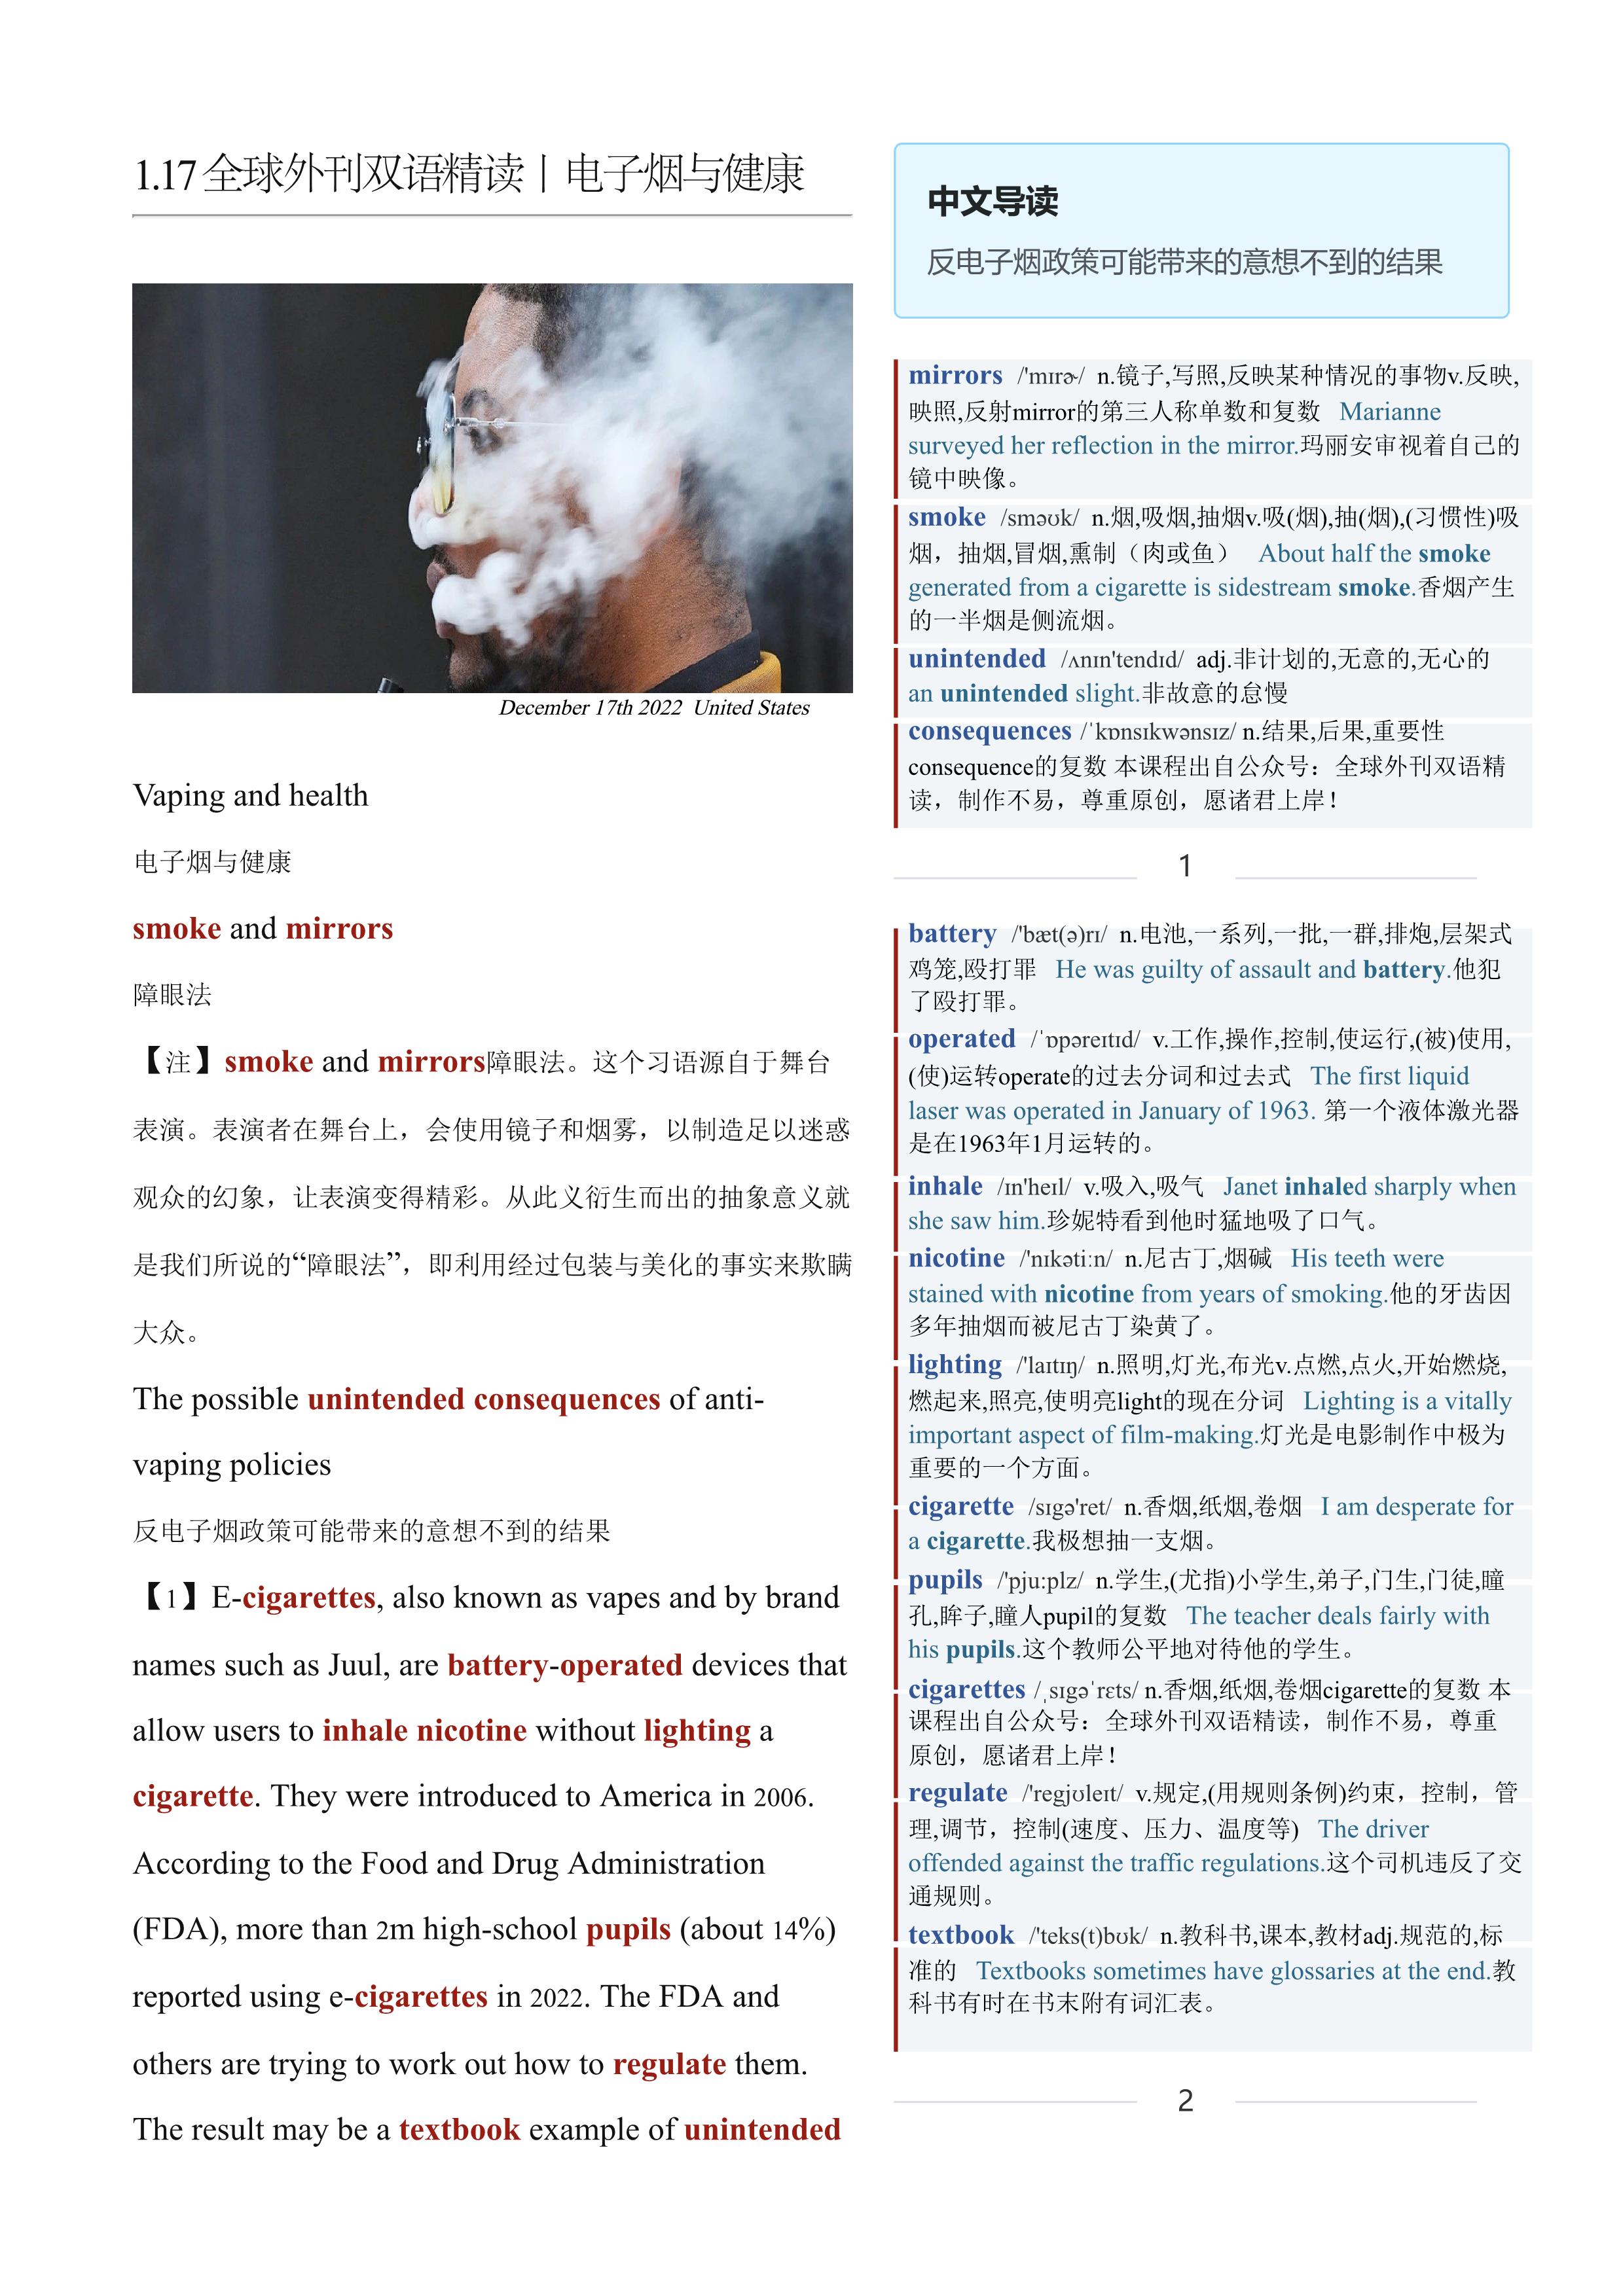 2023.01.17 经济学人双语精读丨电子烟与健康 (.PDF/DOC/MP3)